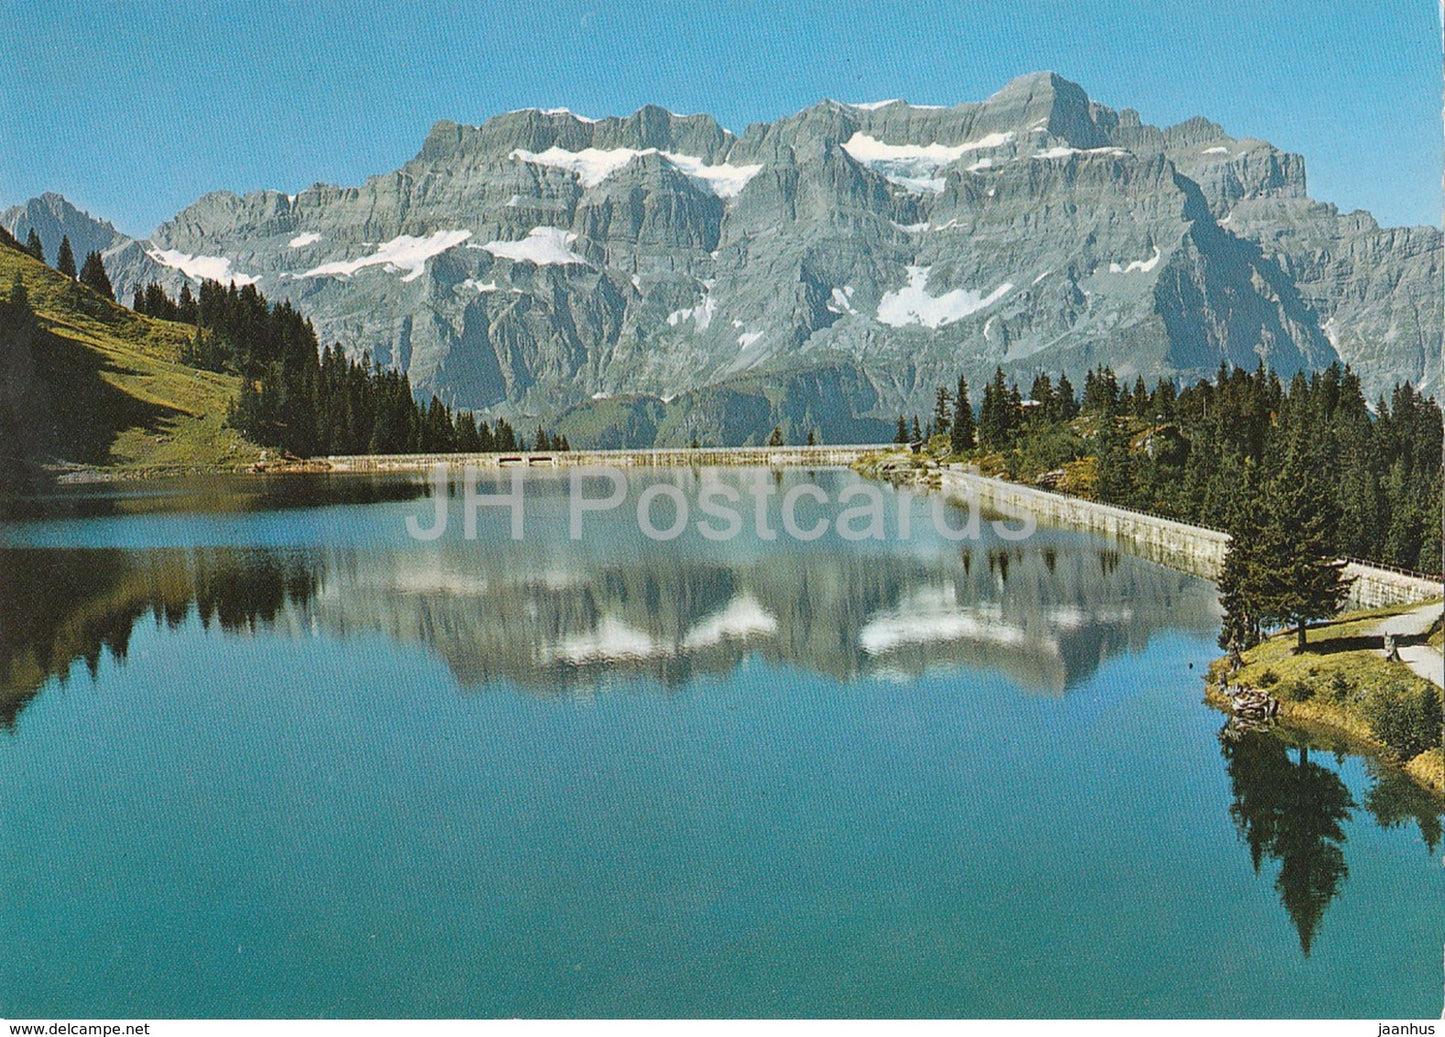 Stausee Garichte gegen Glarnisch - Berggasthaus Mettmen - 2234 - Switzerland - unused - JH Postcards